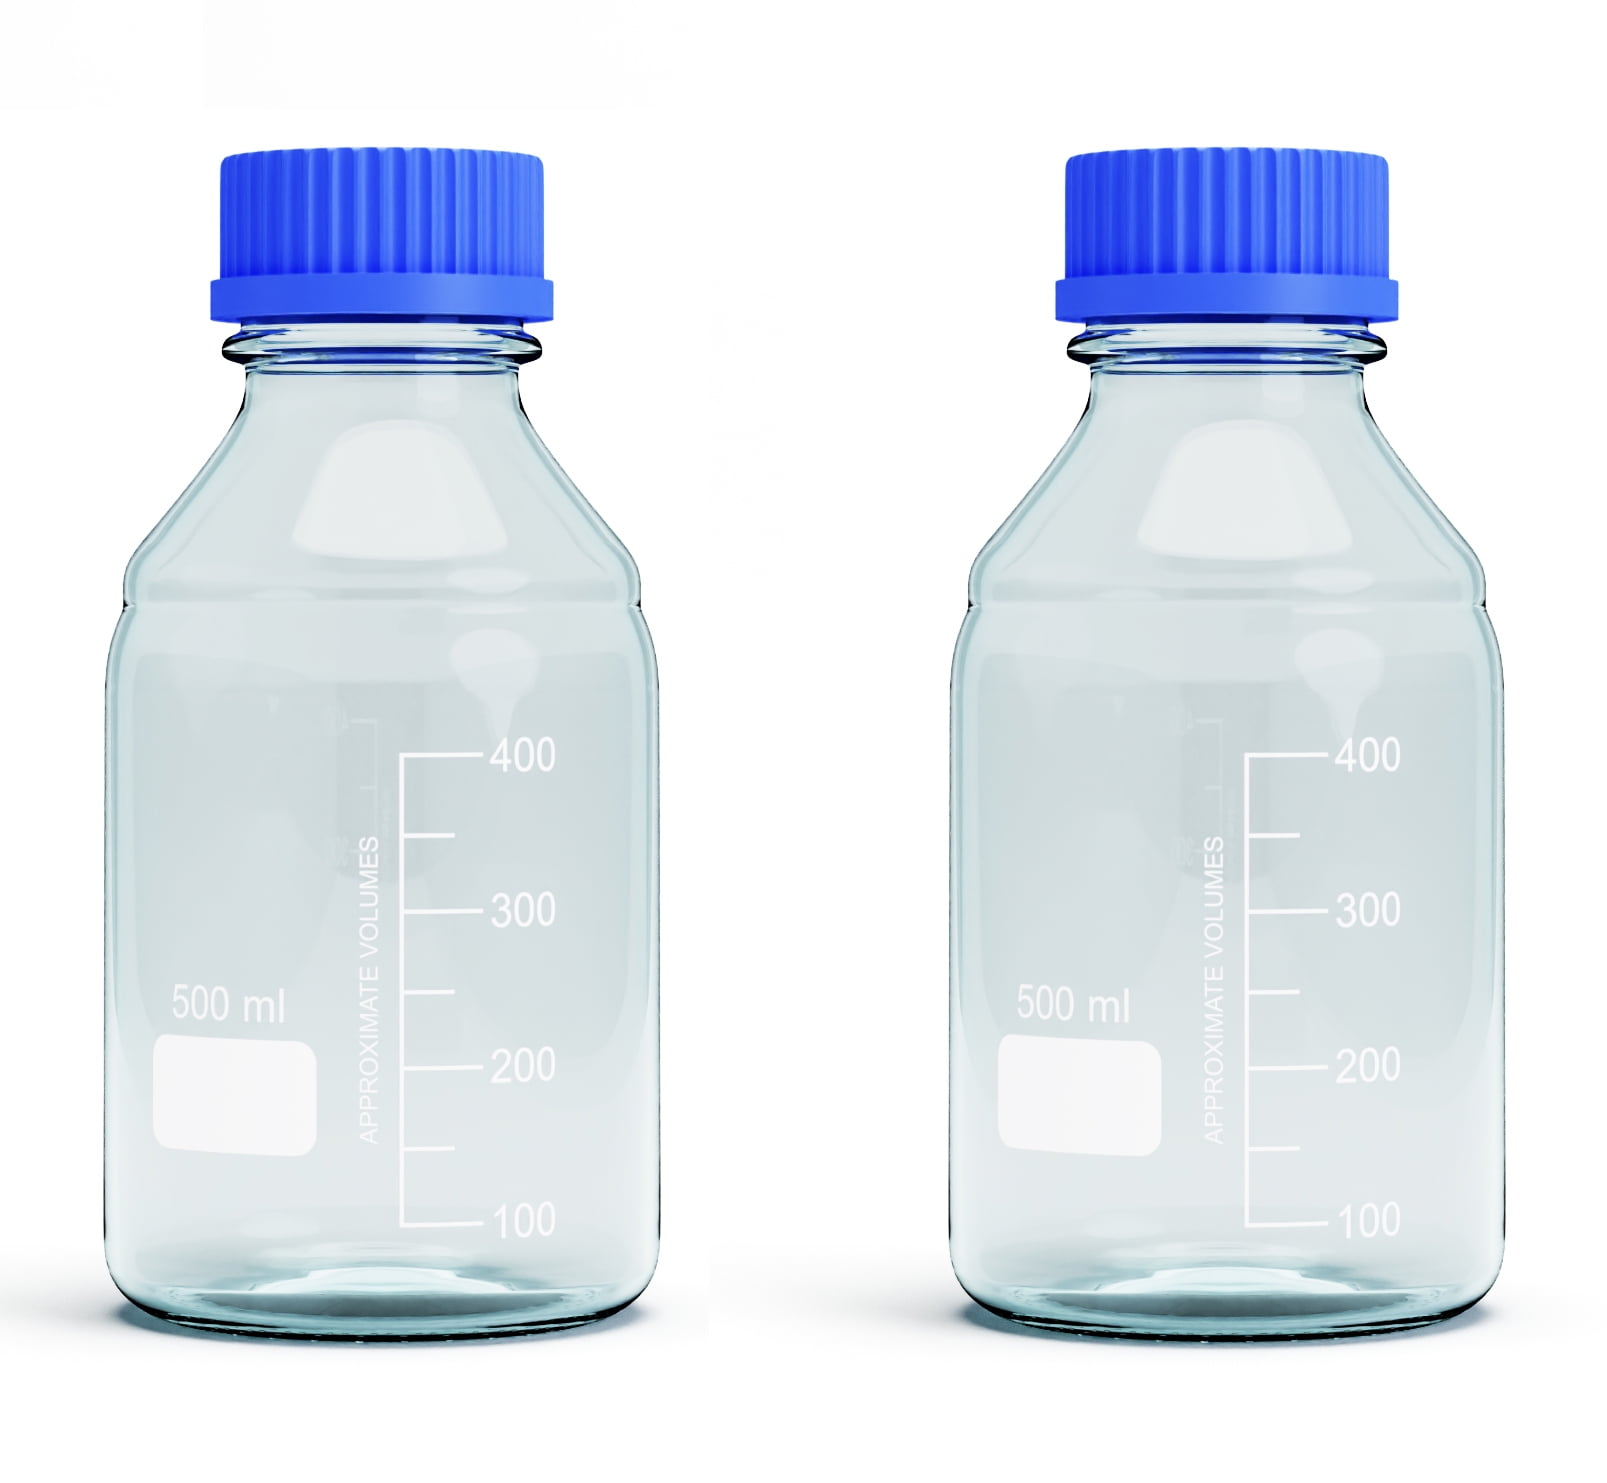 10 Liter Clear Borosilicate Glass Media Bottle, GL-45 Blue Screw Cap,  Graduated